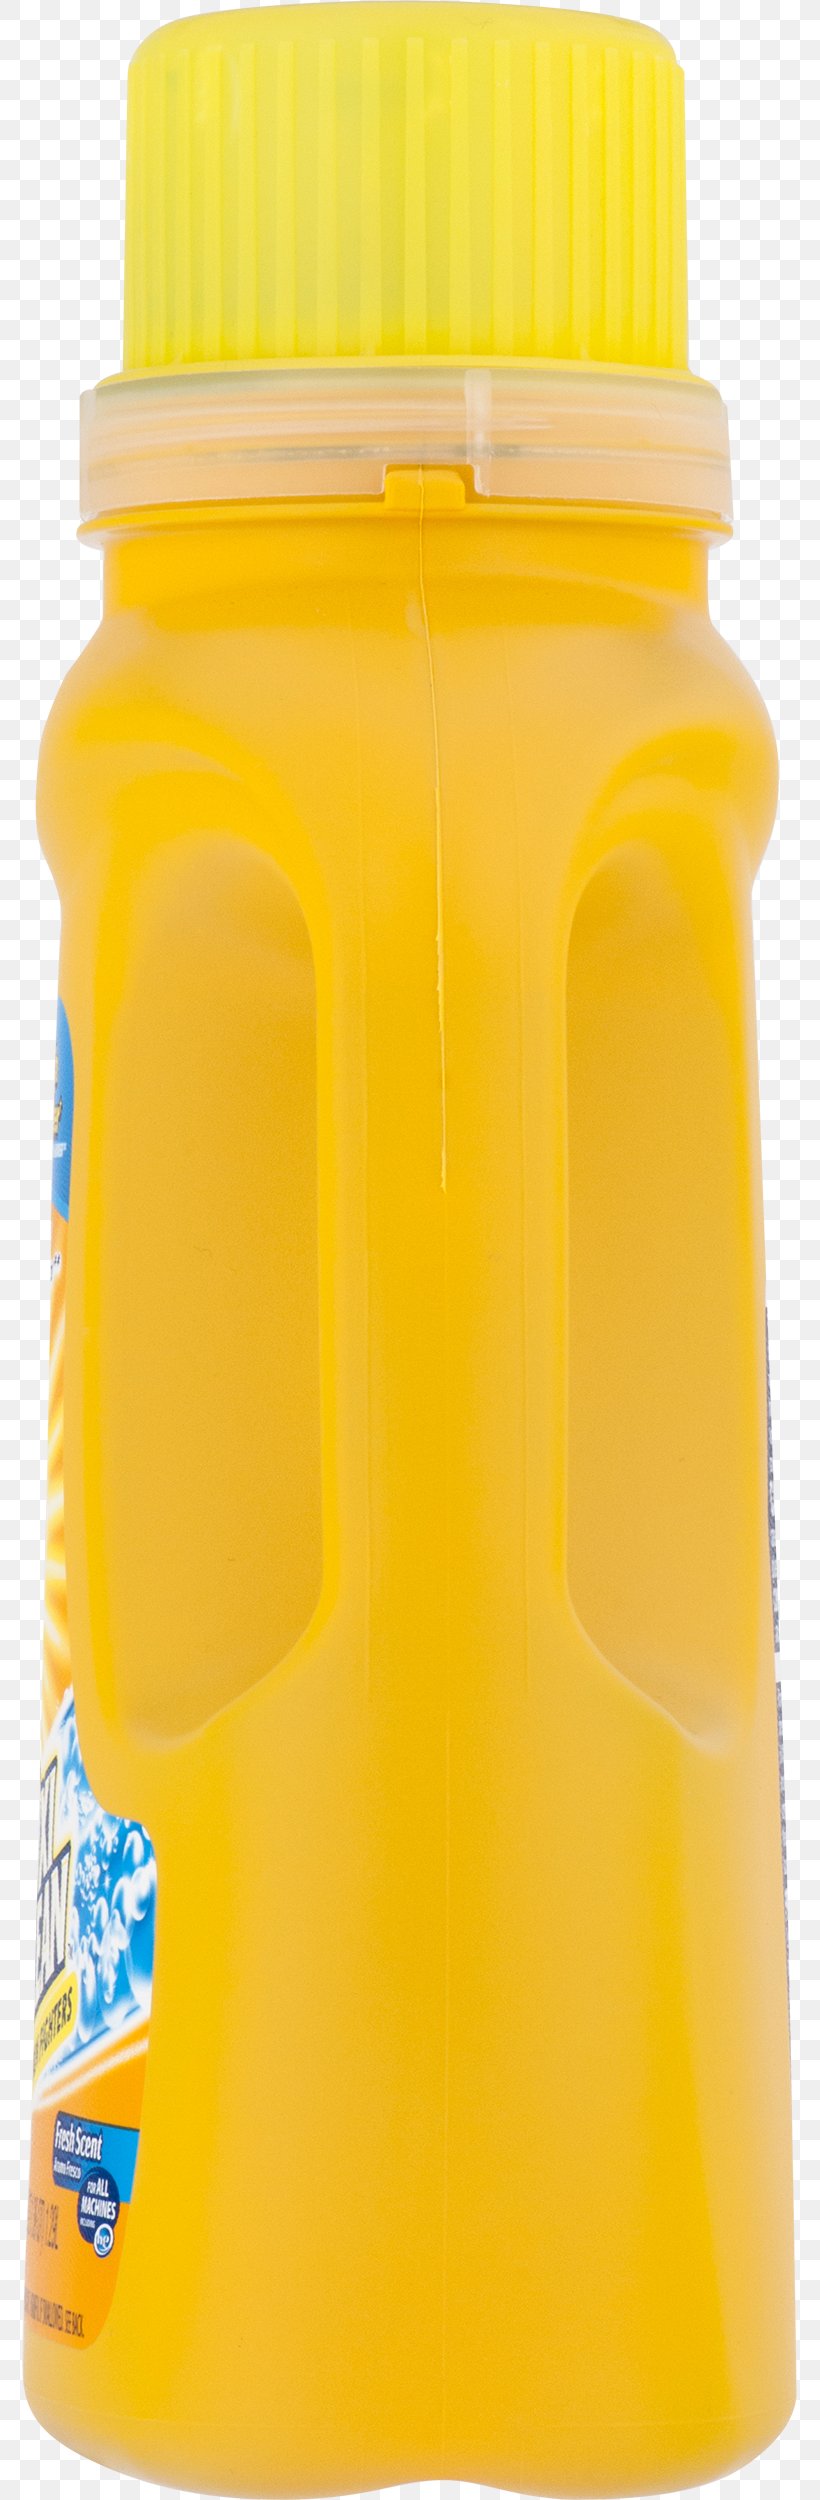 Orange Drink Orange Soft Drink Orange Juice Water Bottles Plastic Bottle, PNG, 775x2500px, Orange Drink, Bottle, Commodity, Drink, Orange Juice Download Free